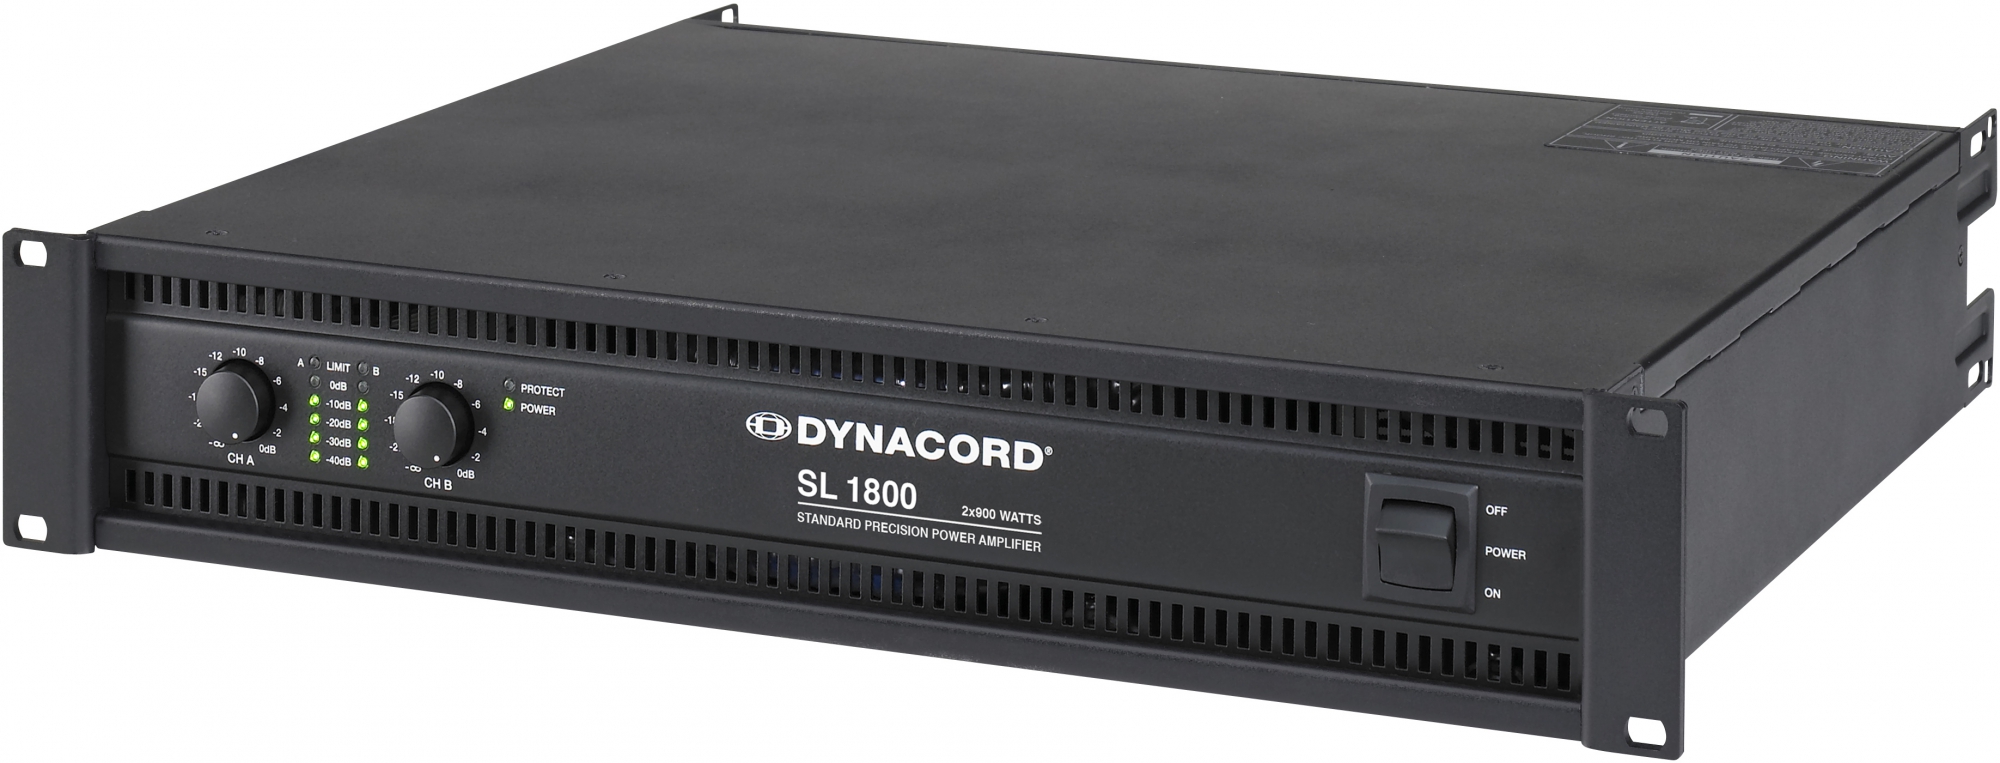 Dynacord SL 1800 effektforsterker